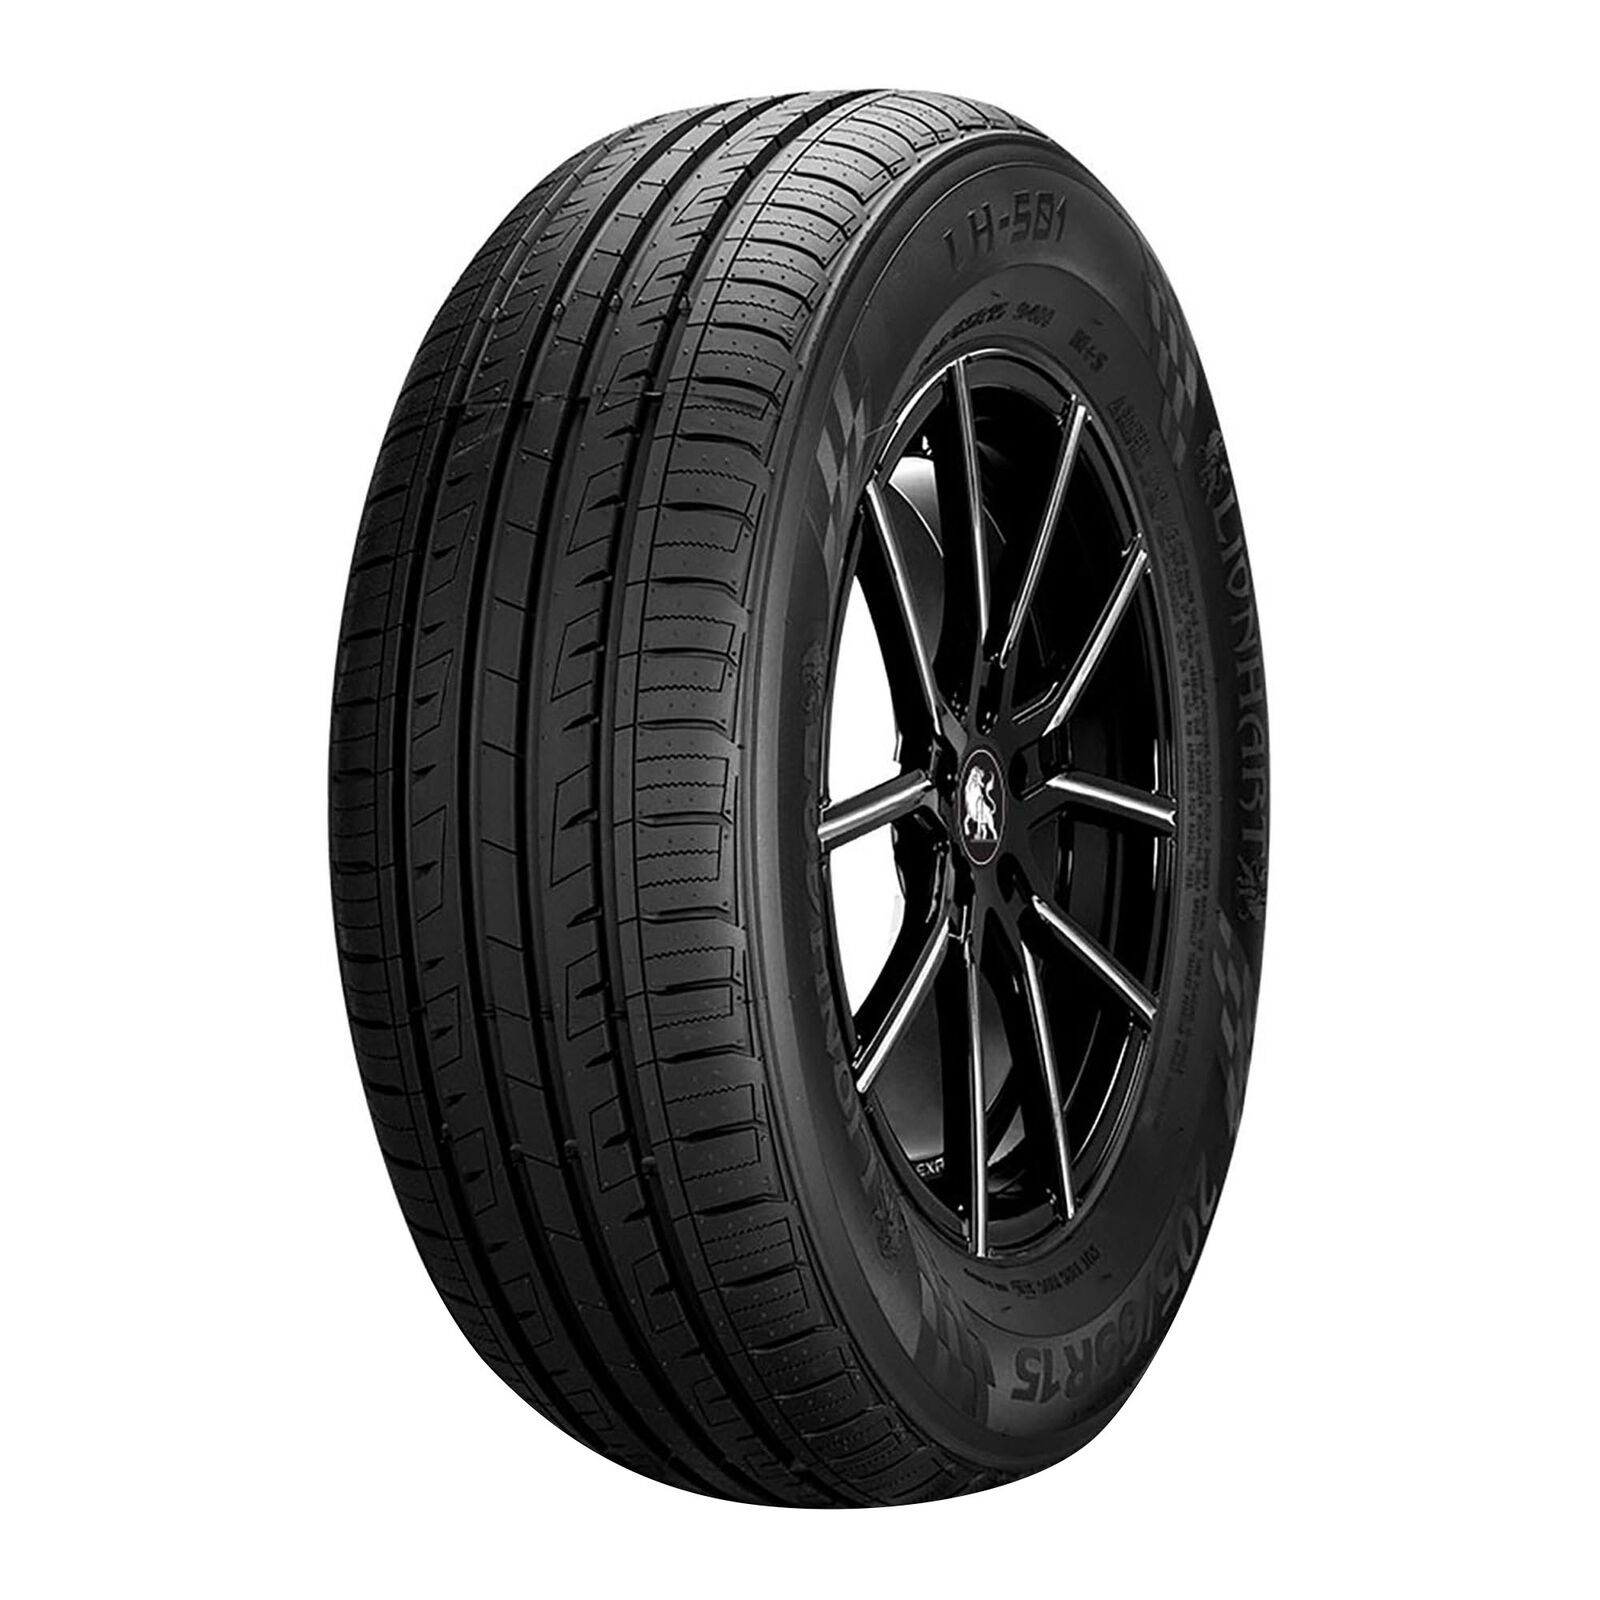 4 New Lionhart Lh-501  - 215/60r16 Tires 2156016 215 60 16